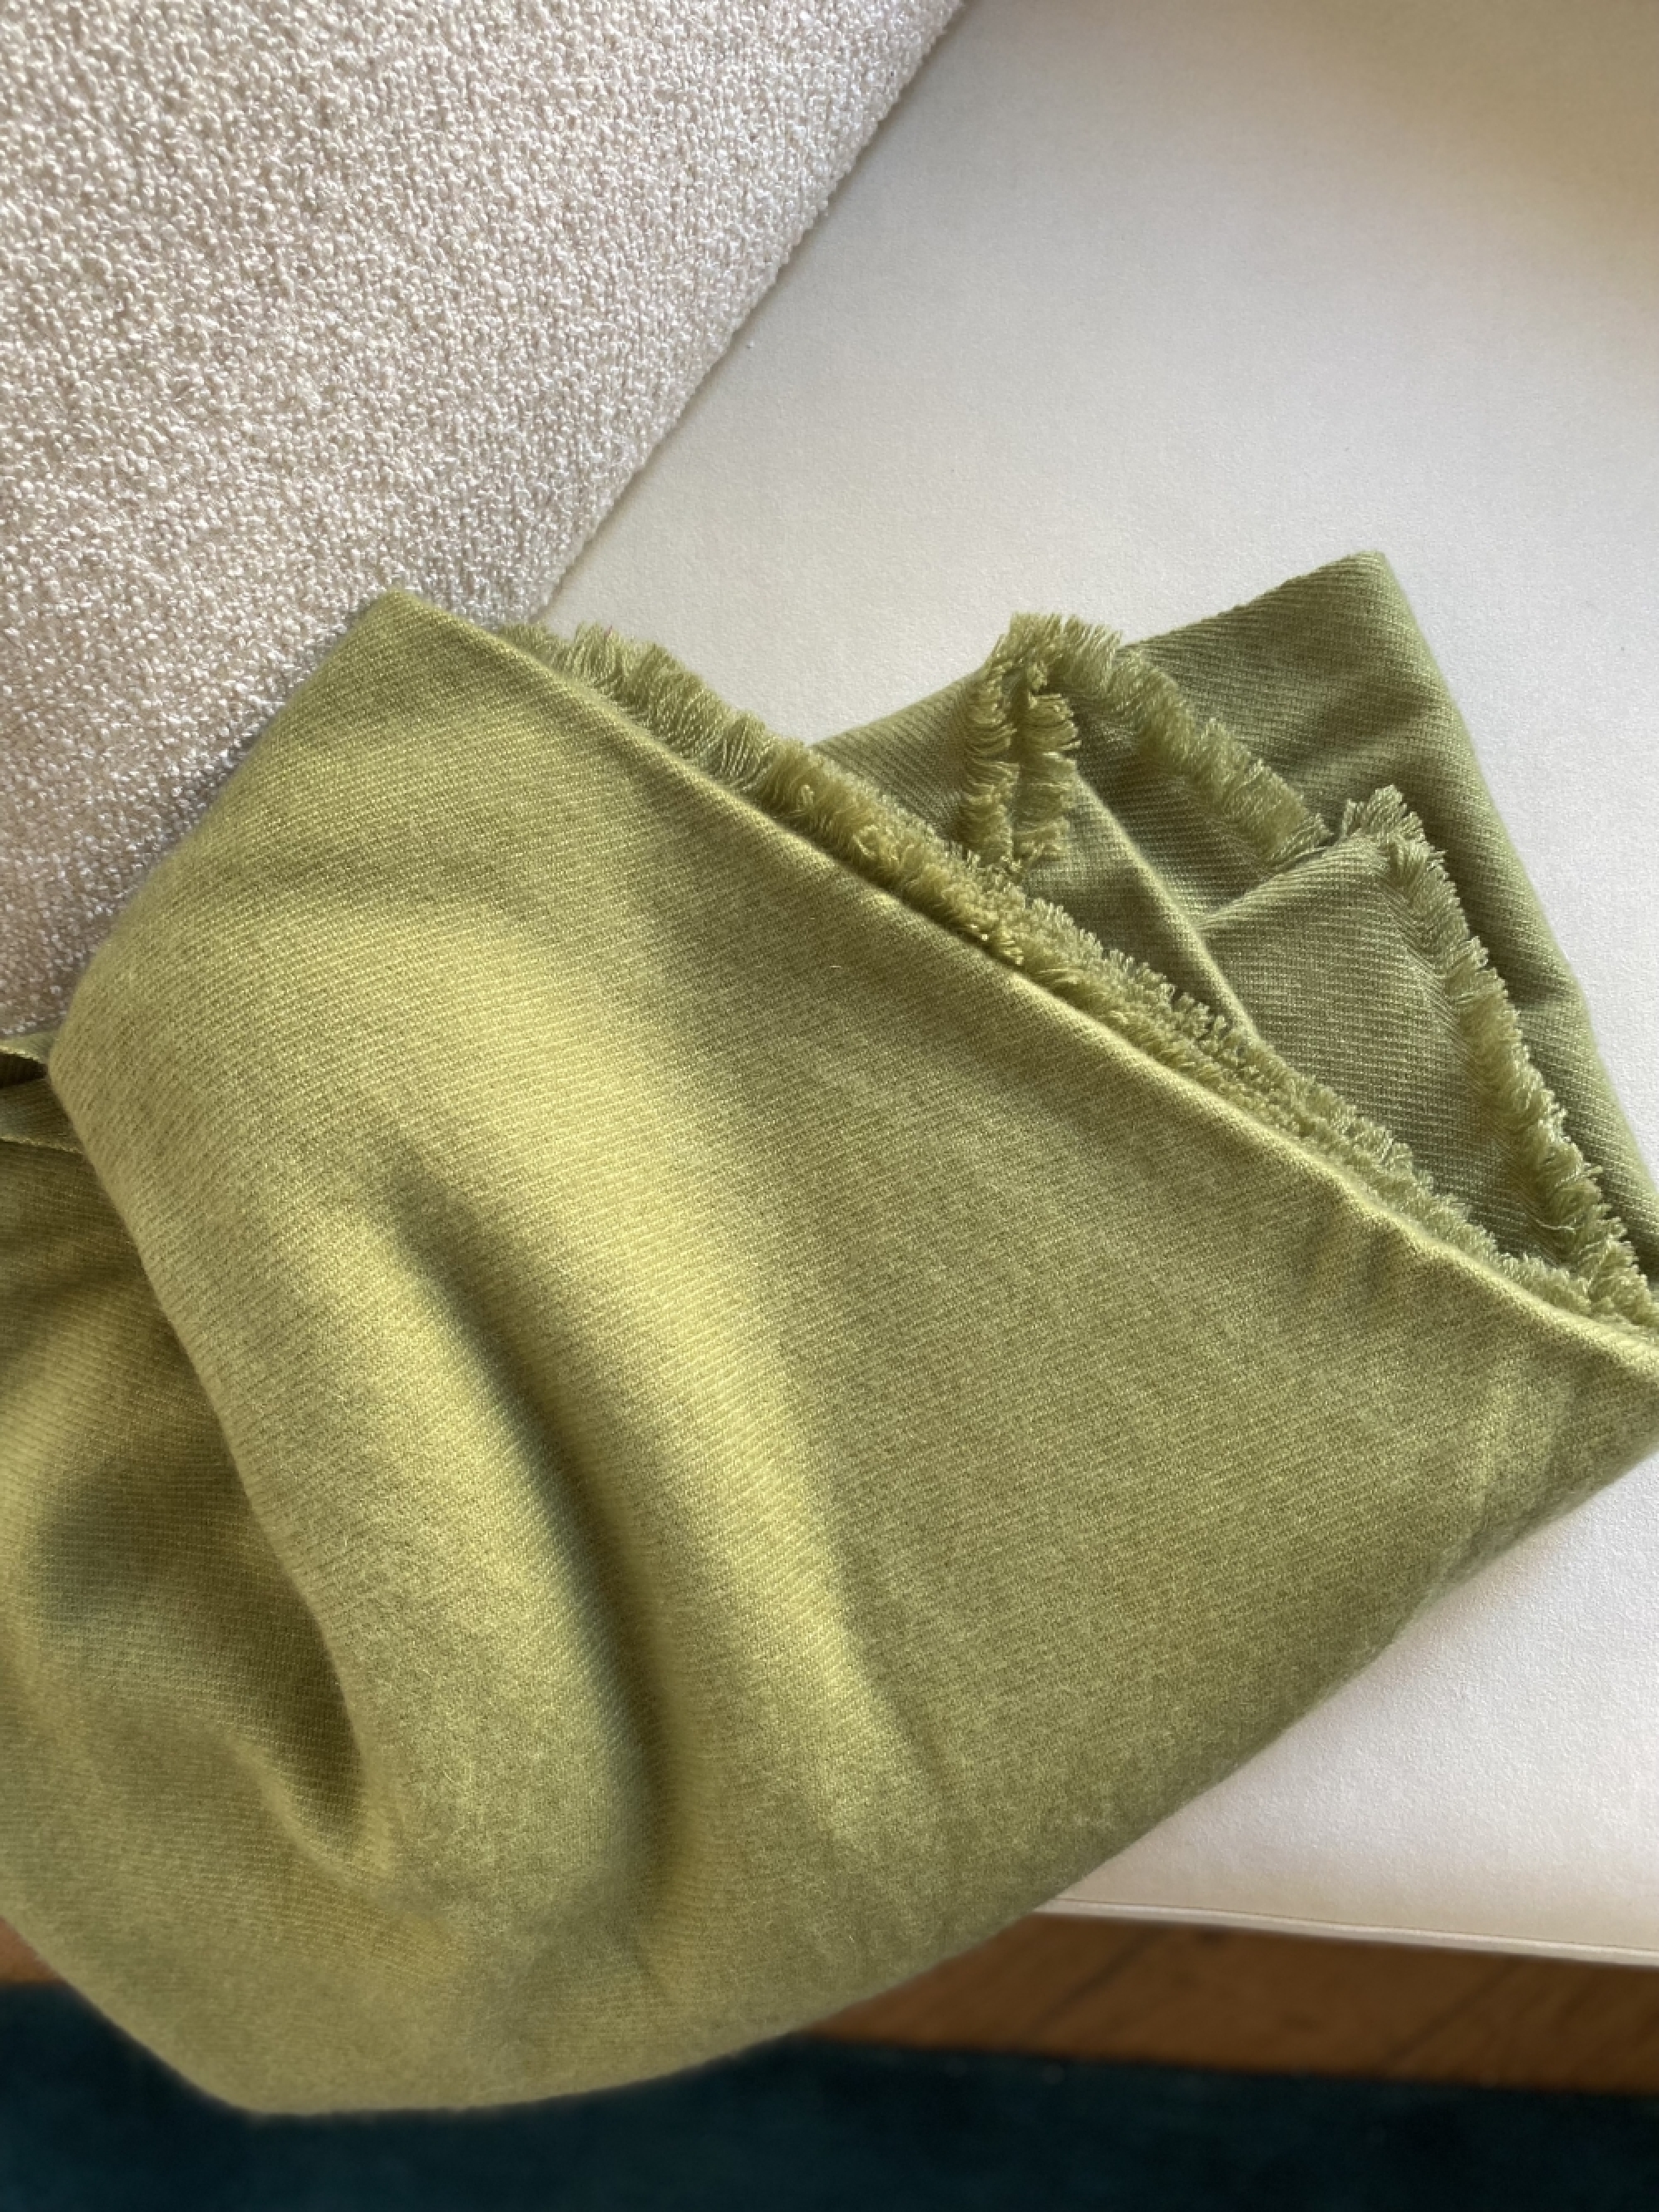 Cachemire accessoires couvertures plaids toodoo plain xl 240 x 260 vert jungle 240 x 260 cm